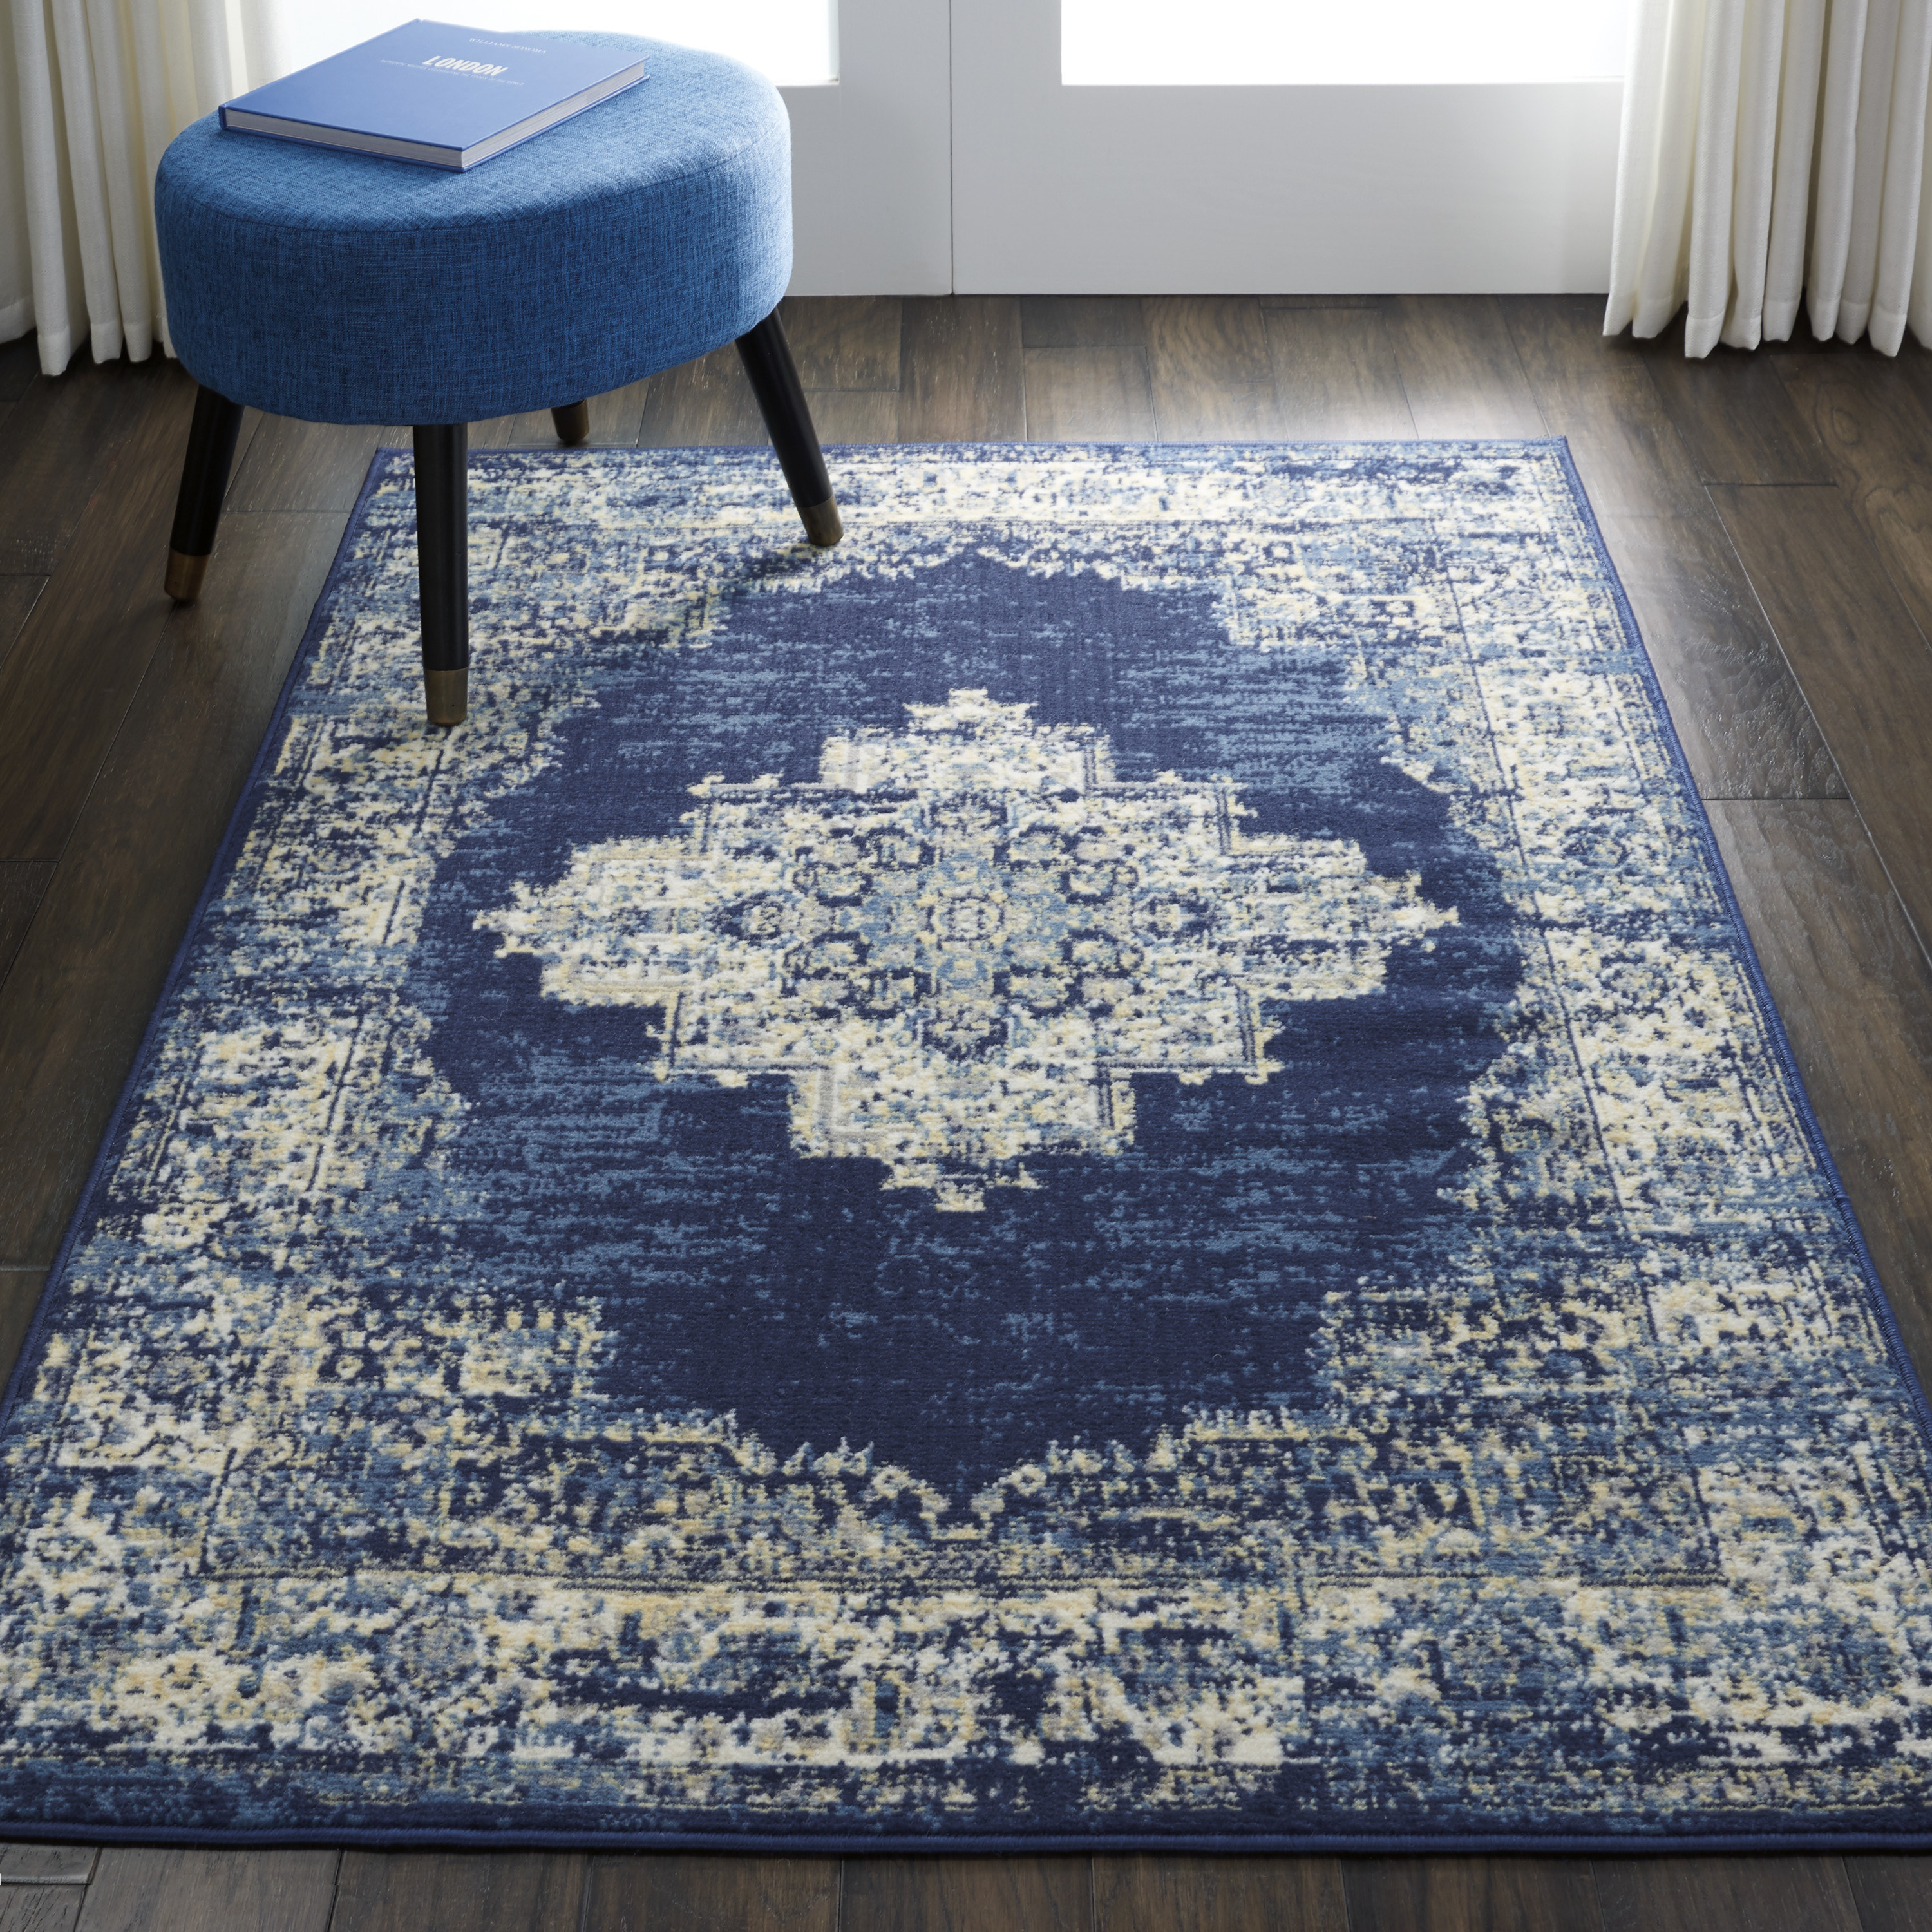 The blue vintage-y area rug